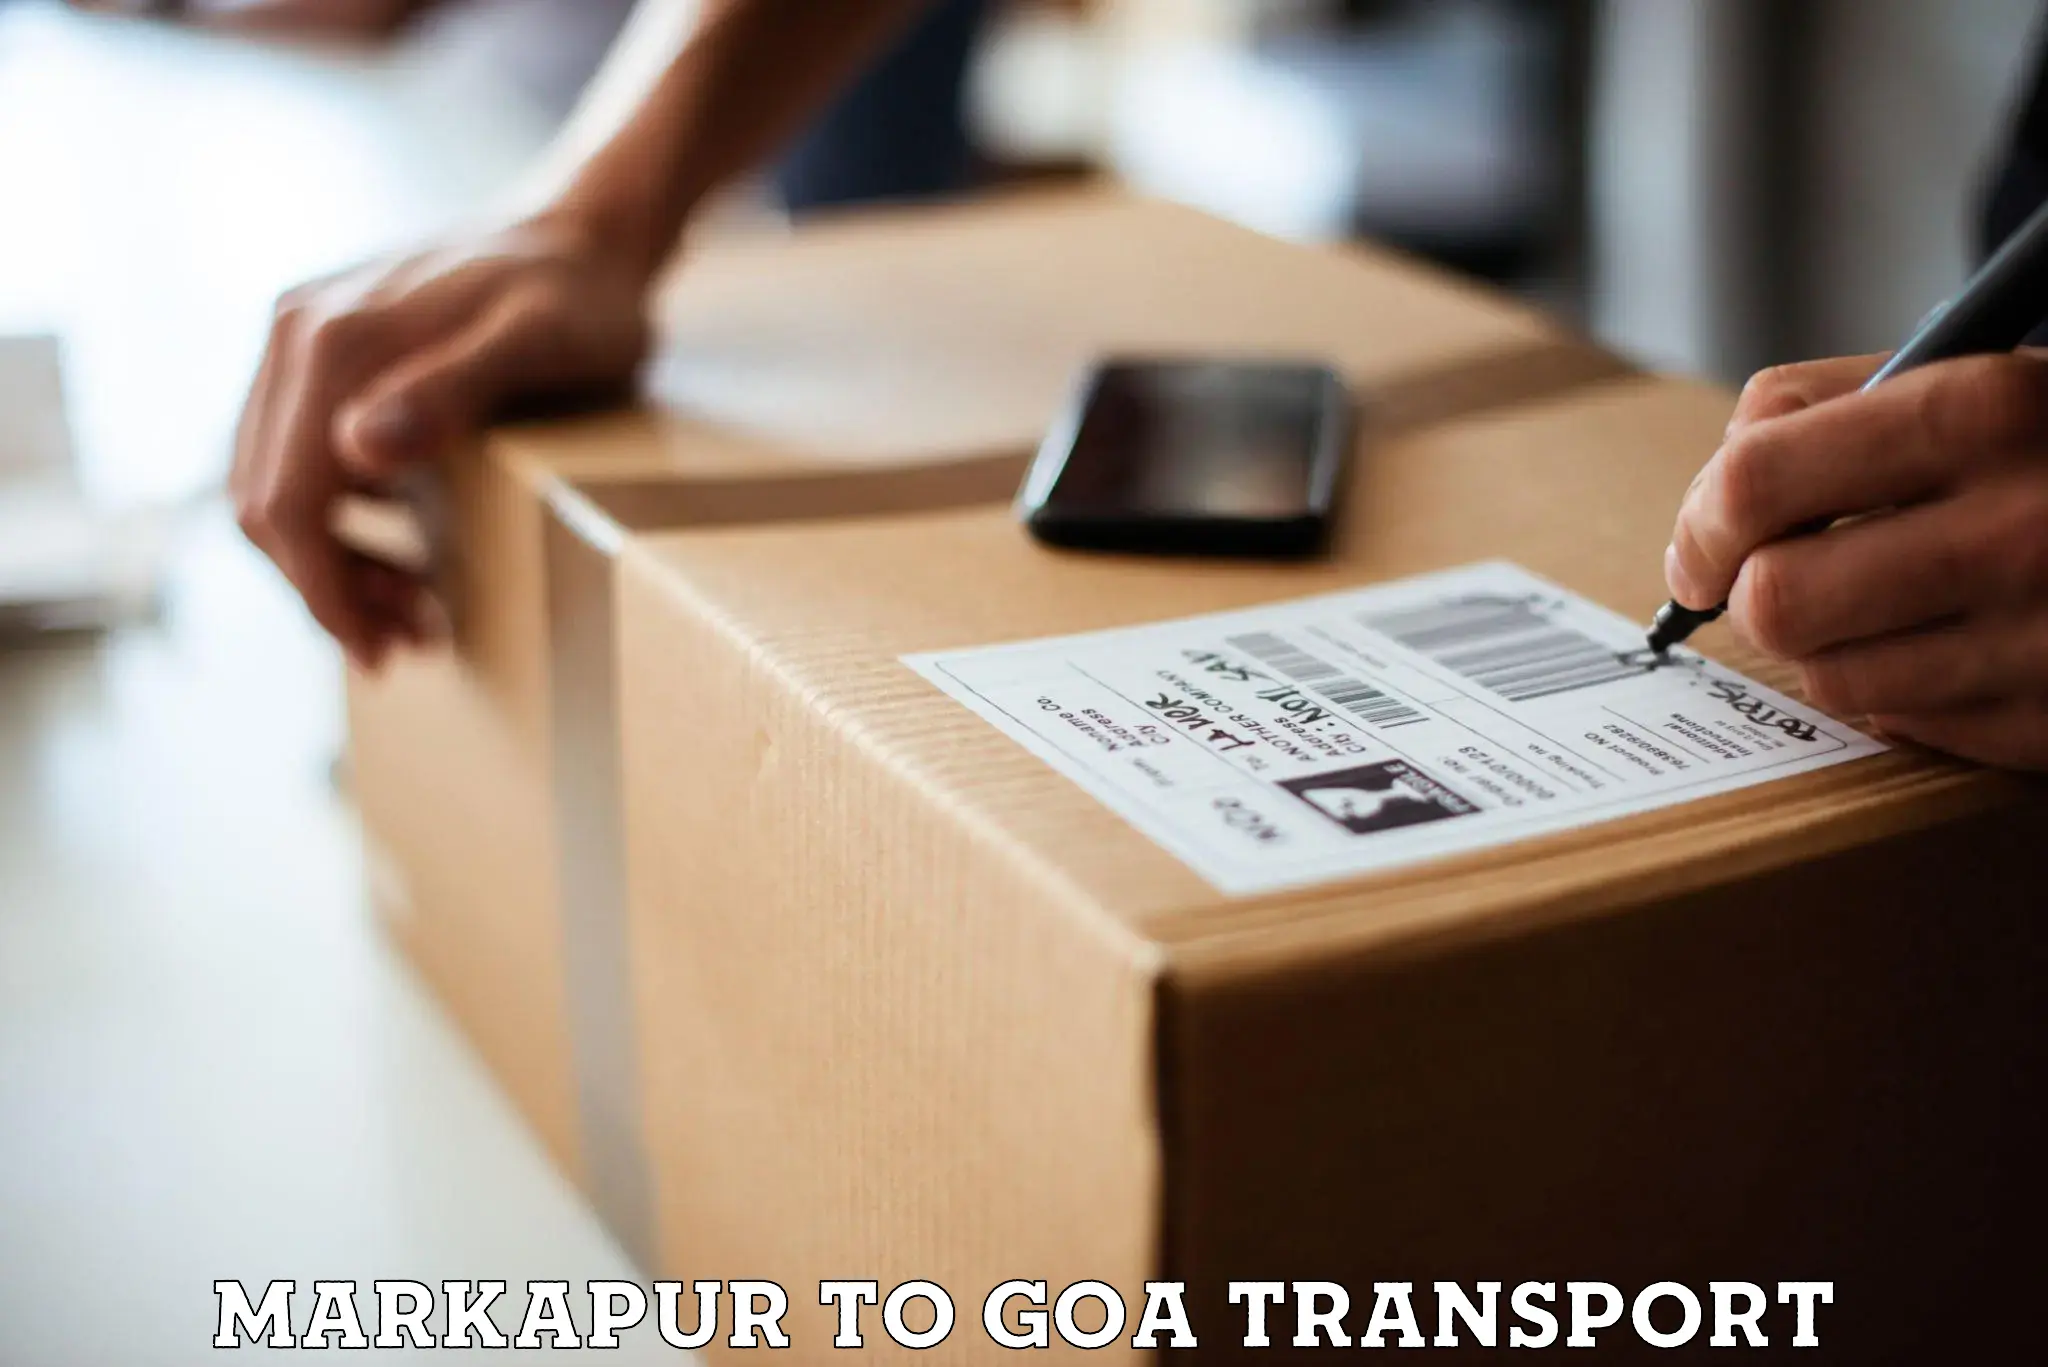 Daily transport service Markapur to Mormugao Port